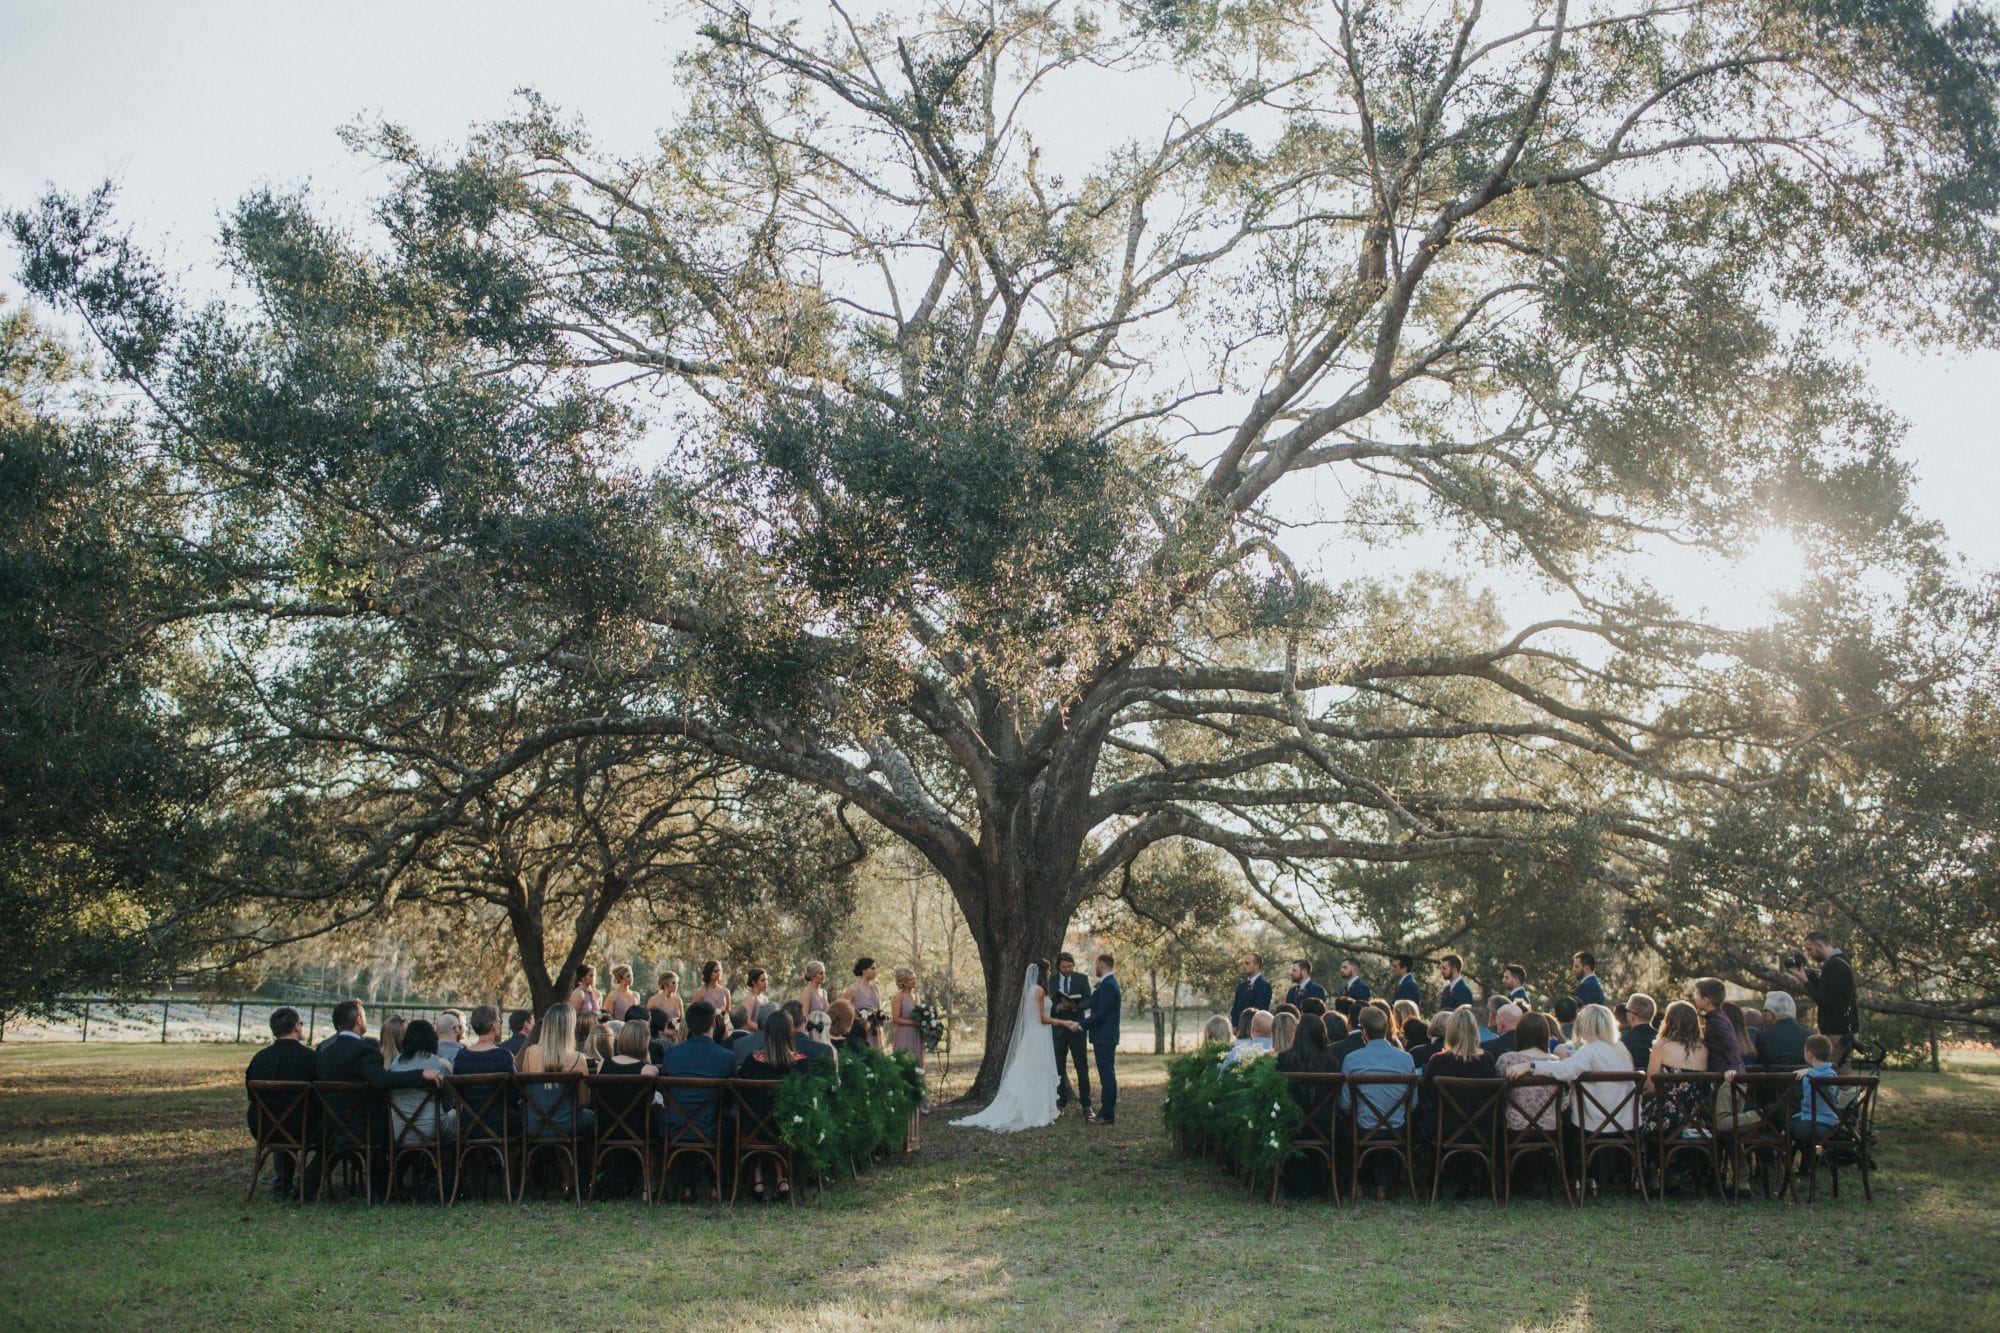 Arundel Estate - wedding ceremony under large oak tree